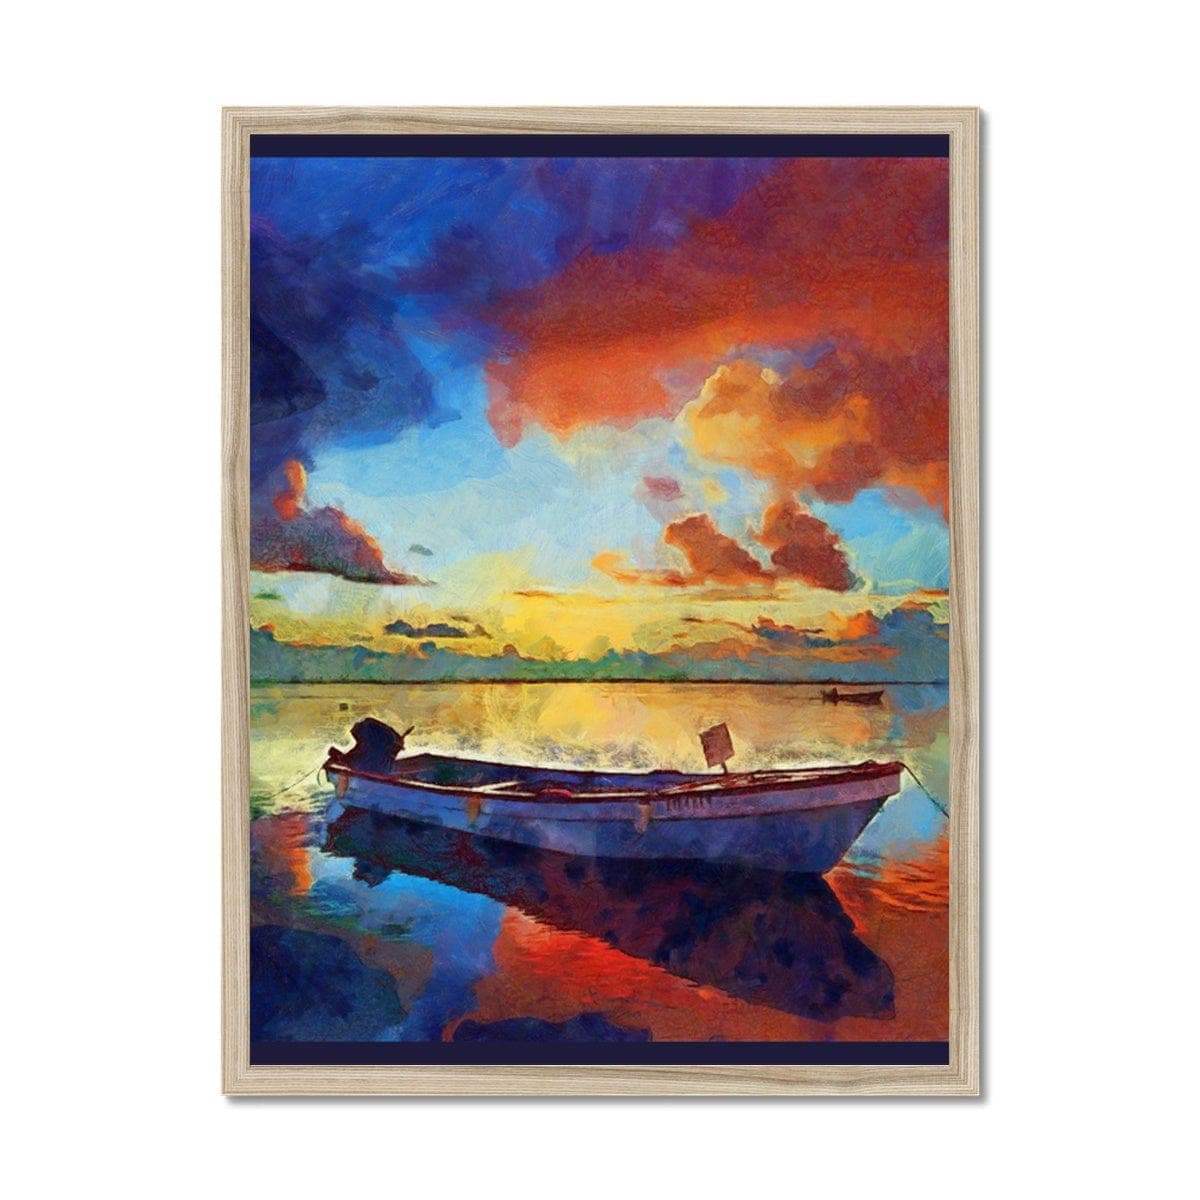 Boat at Orange Dawn in Lake Framed Print